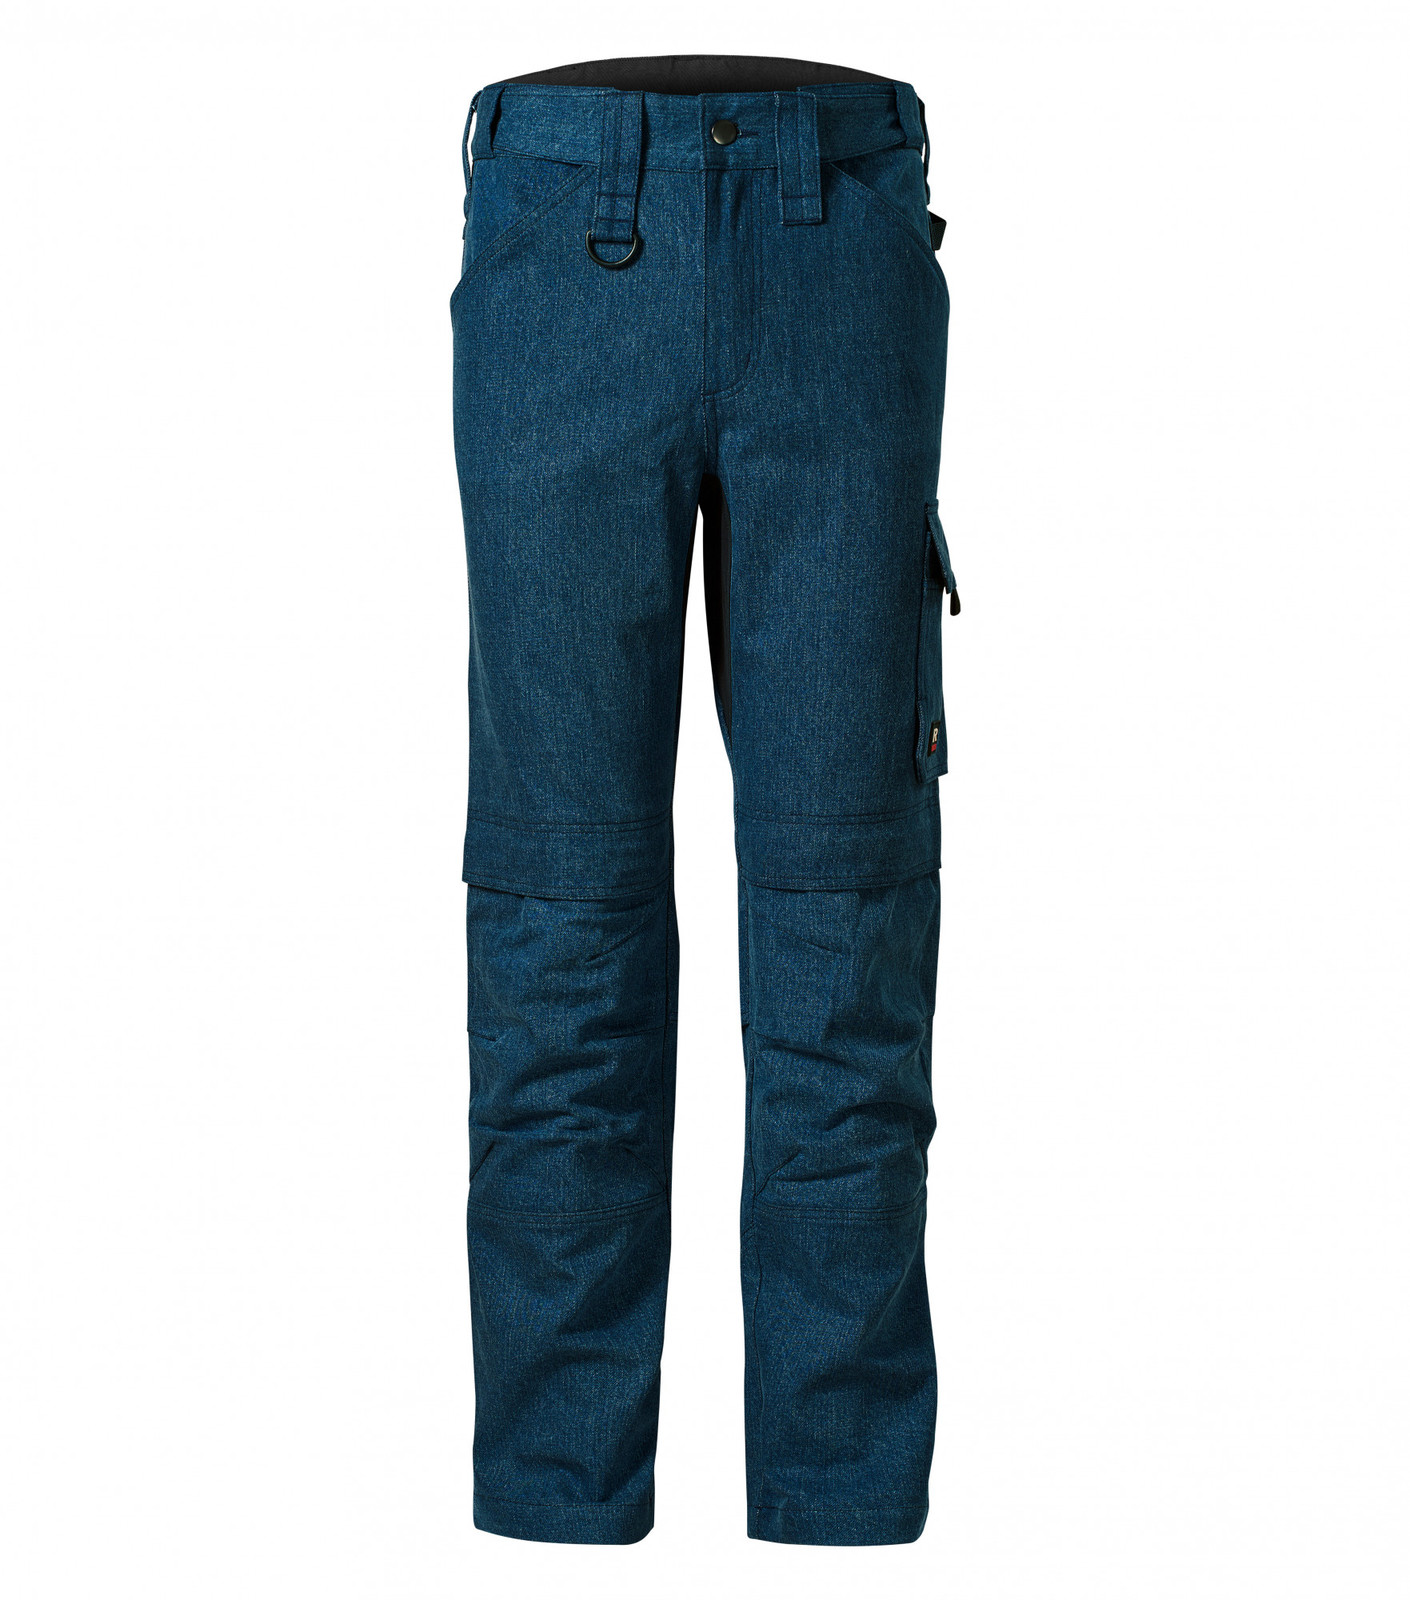 Pánske pracovné džínsy Rimeck Vertex W08 - veľkosť: 54 predĺžené, farba: tmavá navy